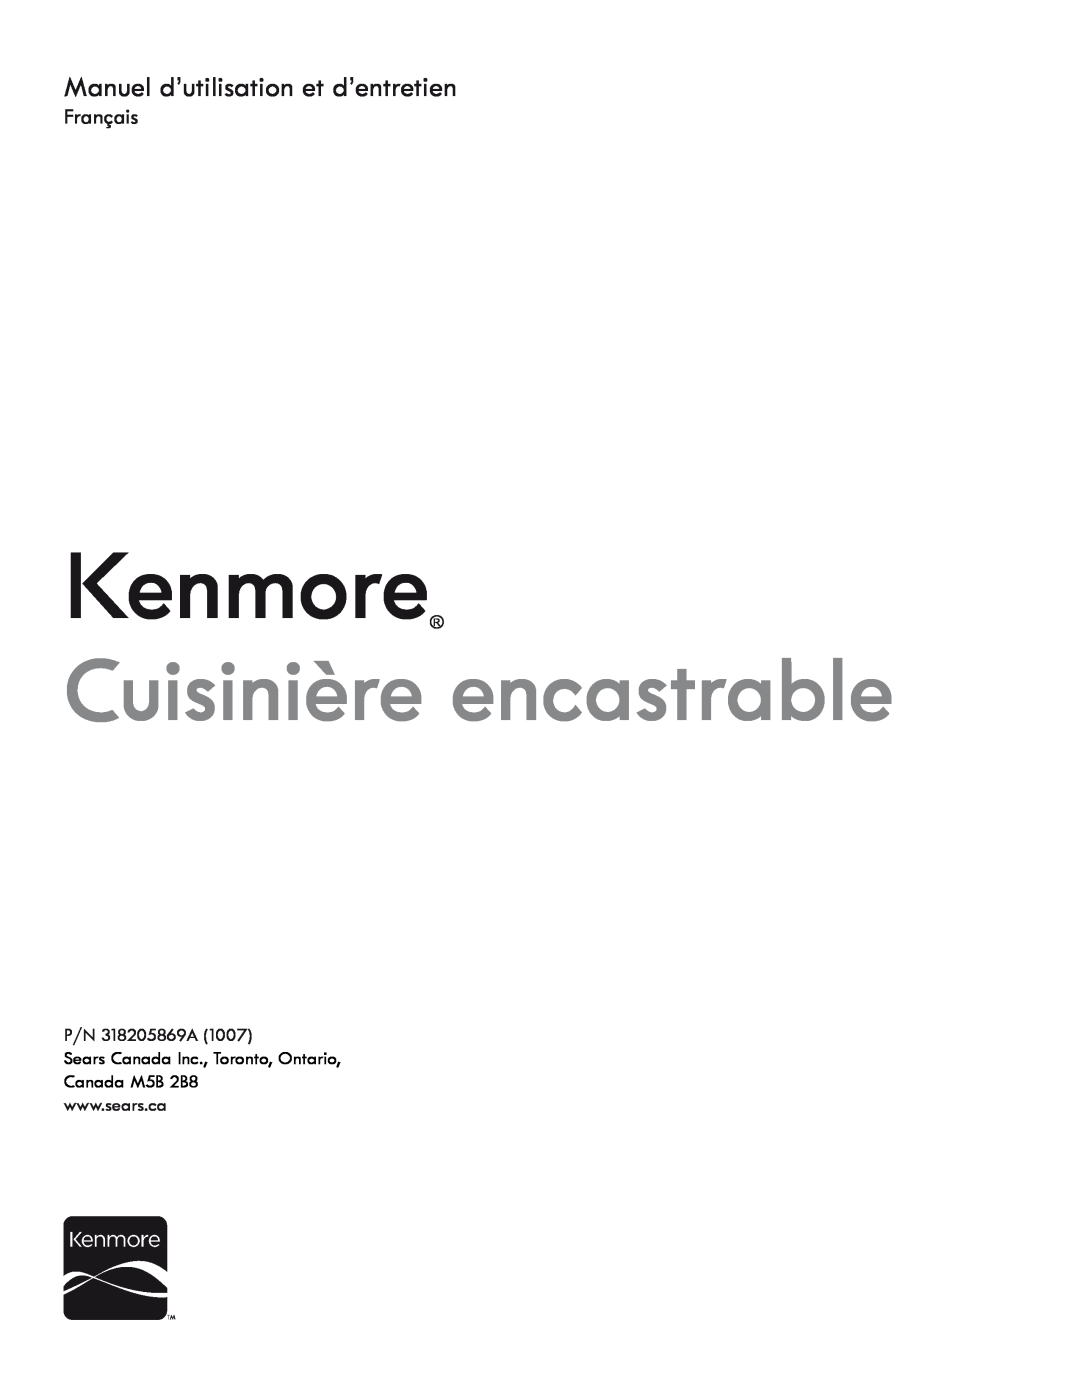 Kenmore 318205869A manual Manuel d’utilisation et d’entretien, Kenmore, Cuisinière encastrable, Français 